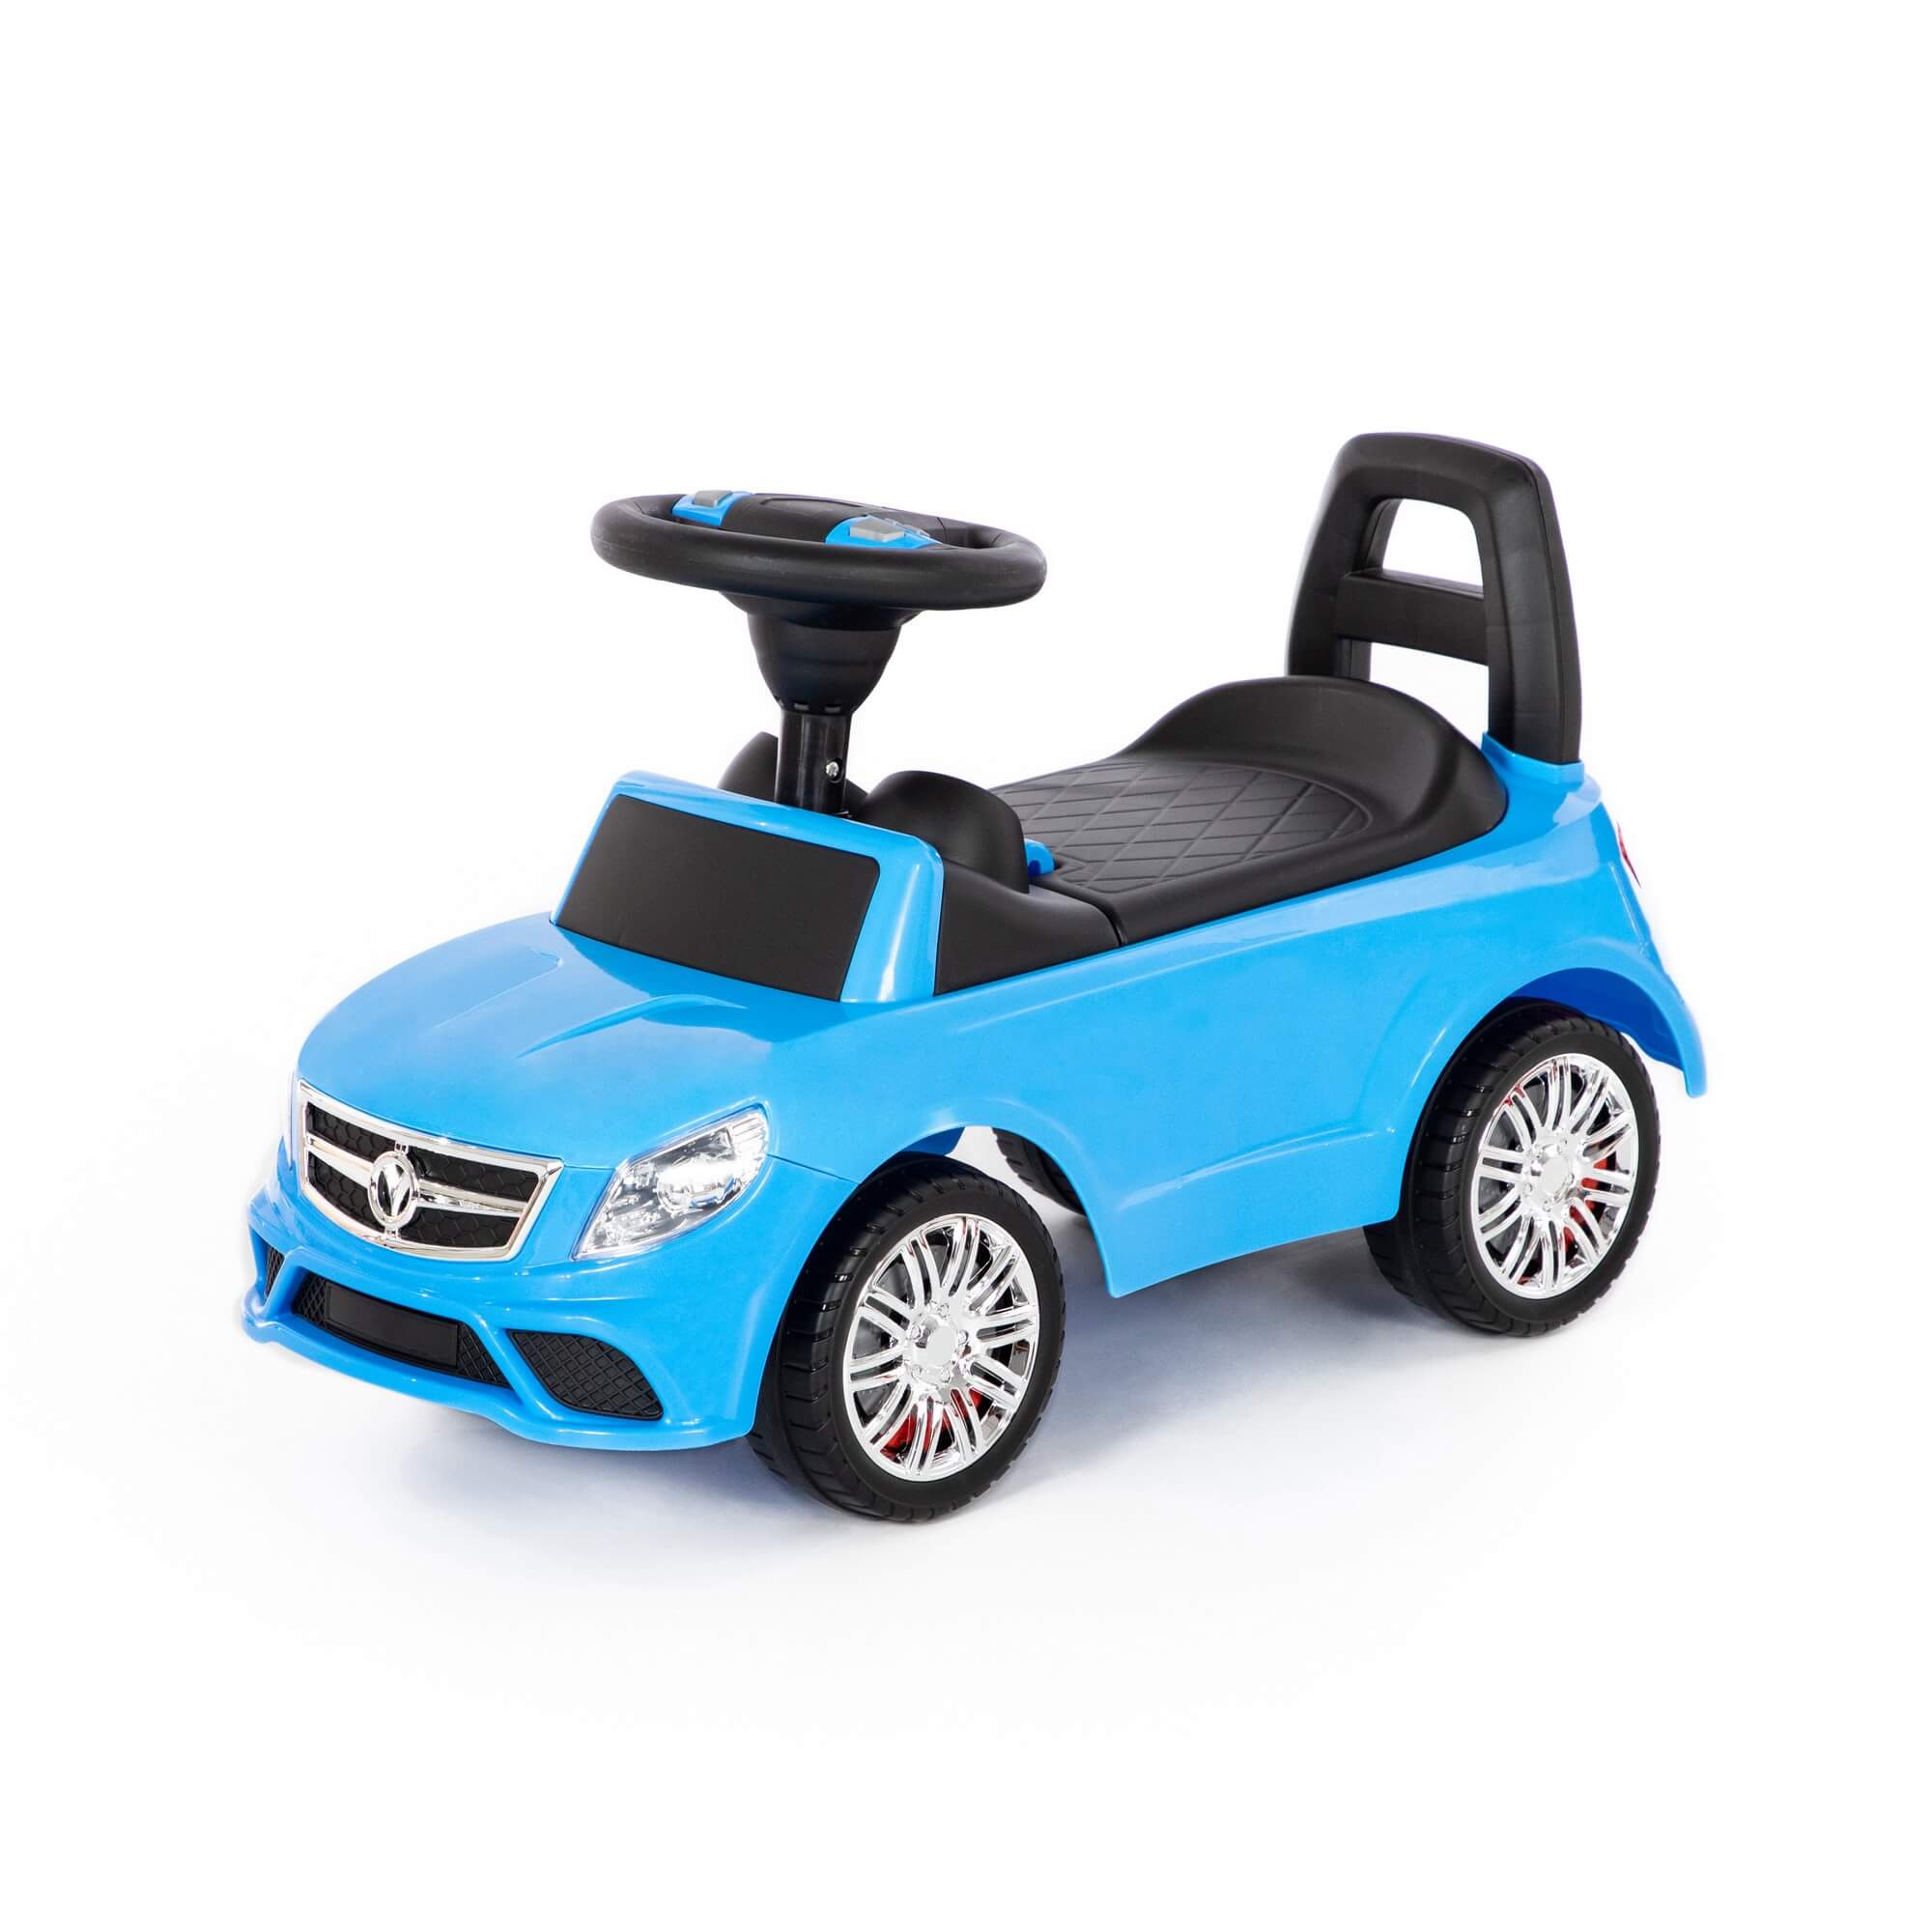 Каталка-автомобиль SuperCar №3 со звуковым сигналом, цвет голубой Полесье 84484 каталка полесье автомобиль supercar 6 со звуковым сигналом